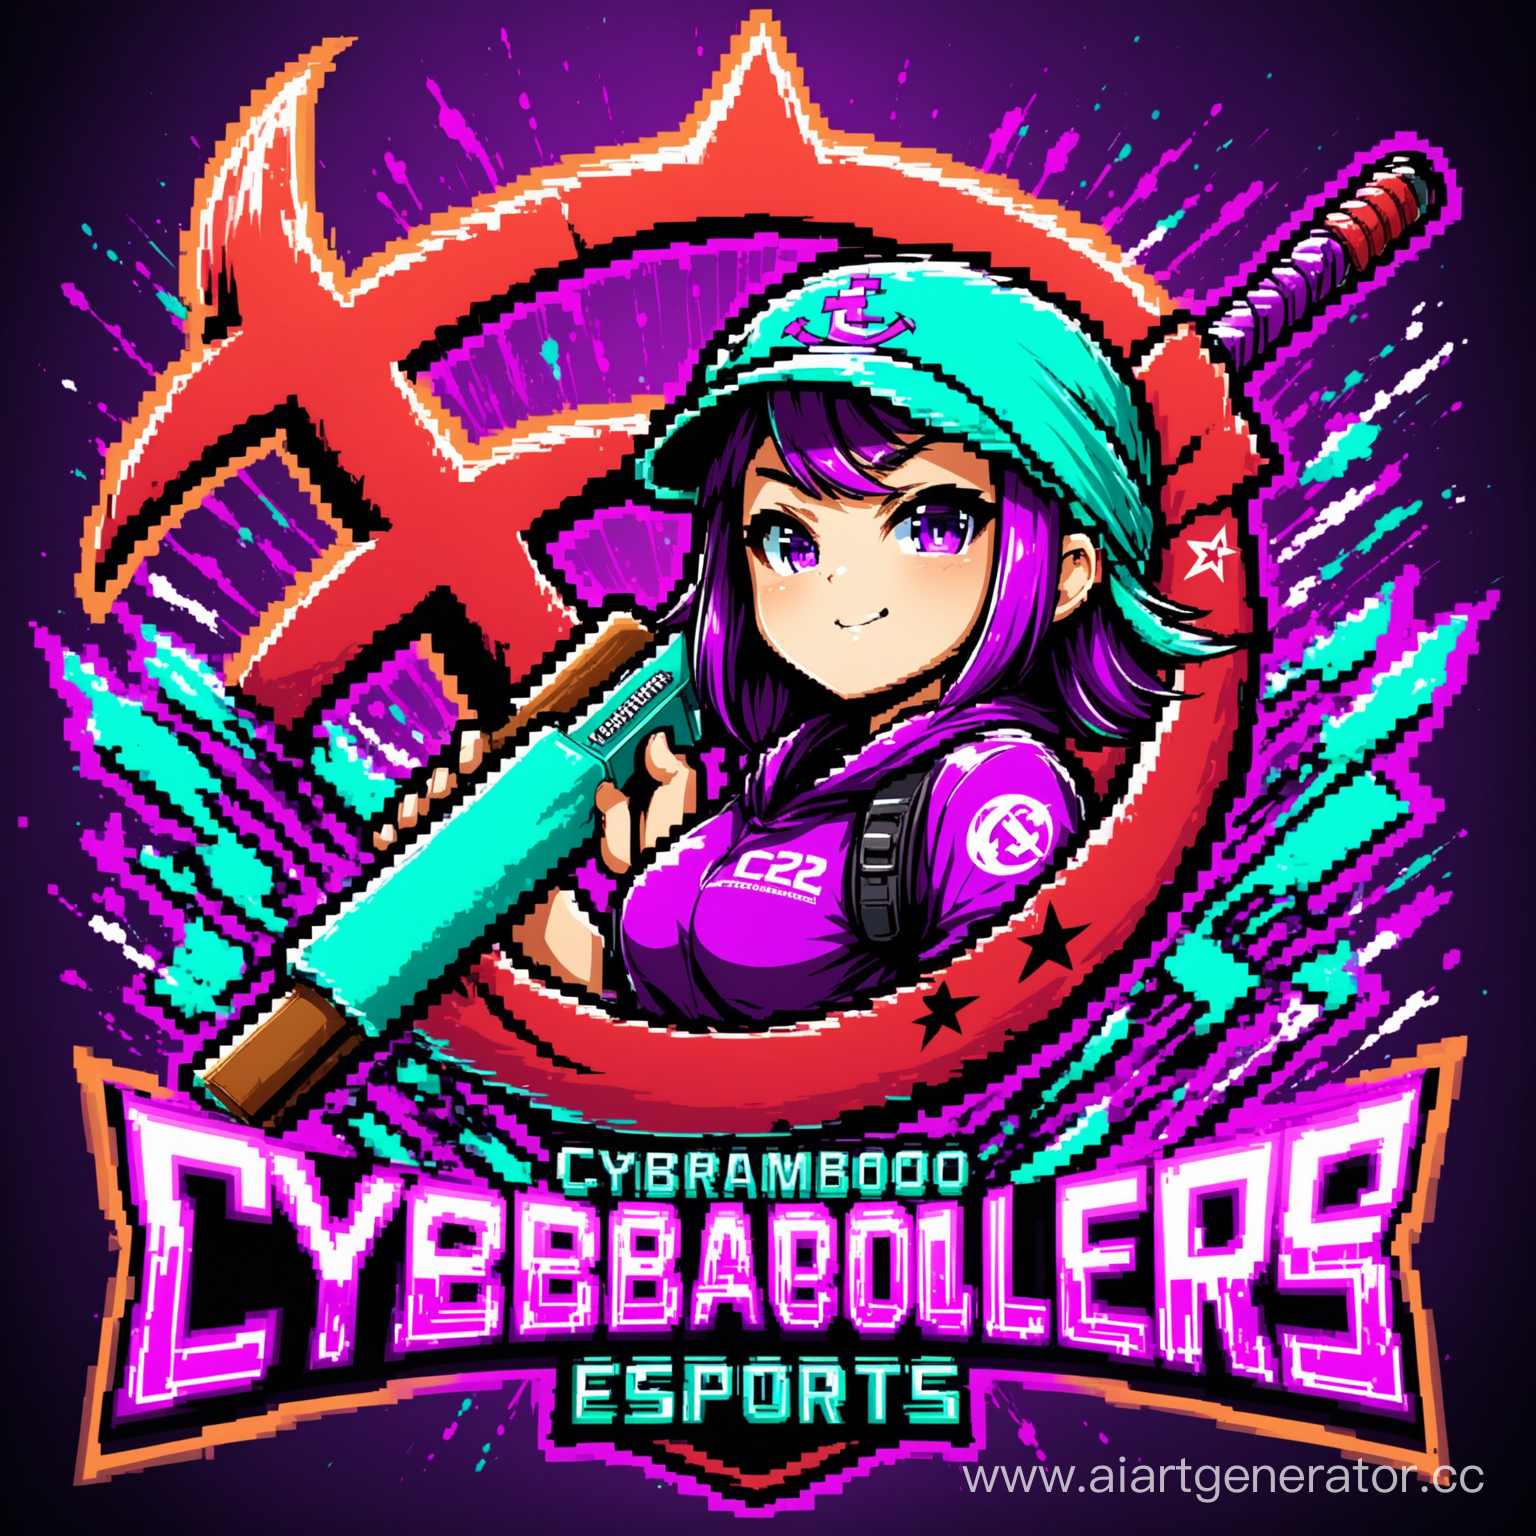 Аватарка для киберспортивноей команды CyberBamboozlers по игре CS2. В фиолетовом, неоново-бирюзовых цветак с ремпиратором и оружием в виде серпа и молота. Должна быть надпись большими буквами CyBa